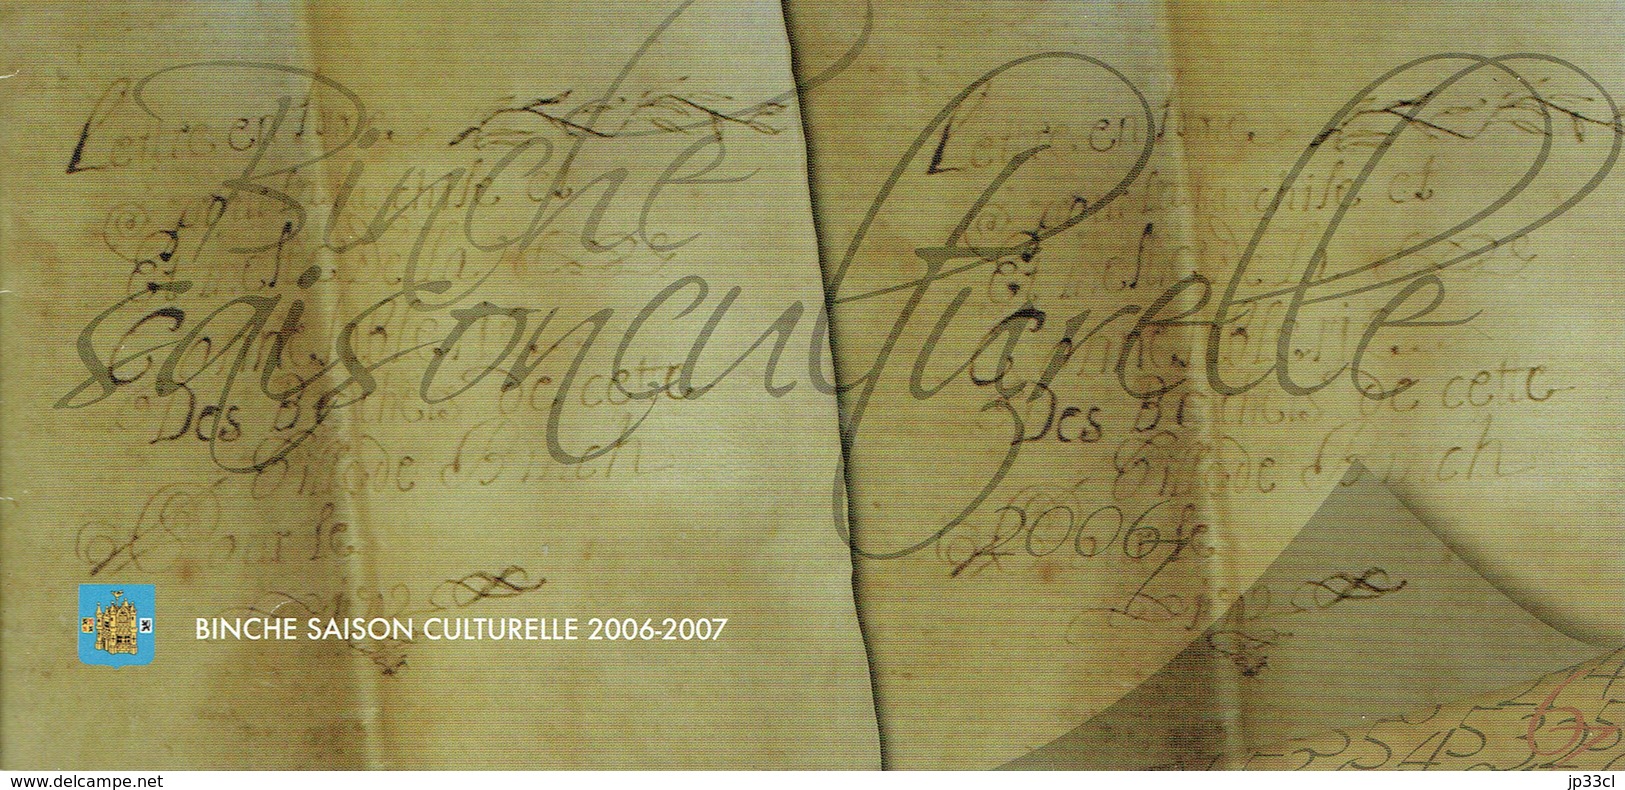 Programme De La Saison Culturelle De Binche, Année 2006/2007 (20 Pages) - Programmes